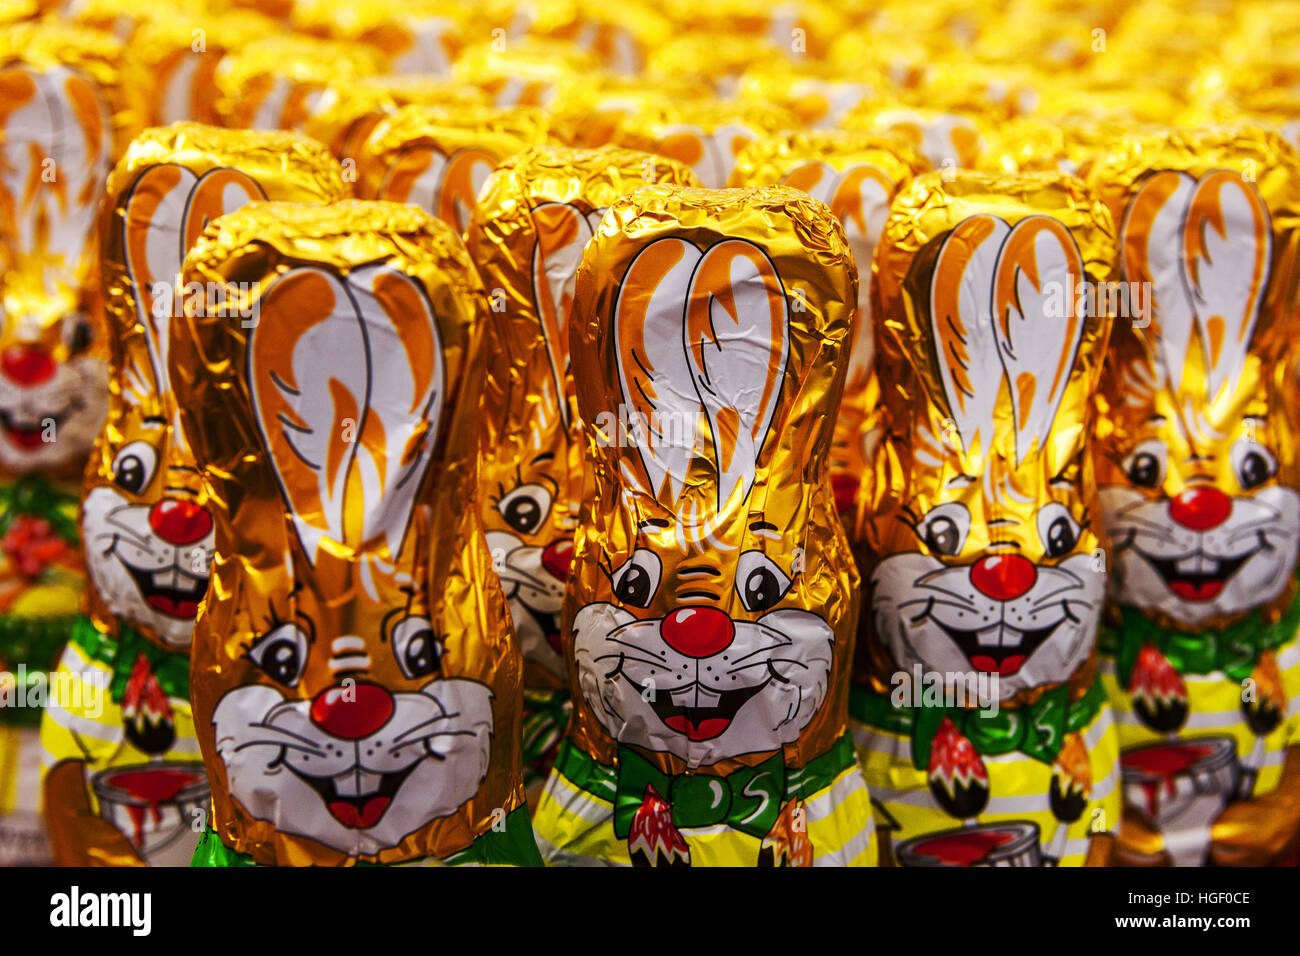 Figuras de chocolate conejitos de Pascua alineados en la estantería de supermercados, República Checa Foto de stock